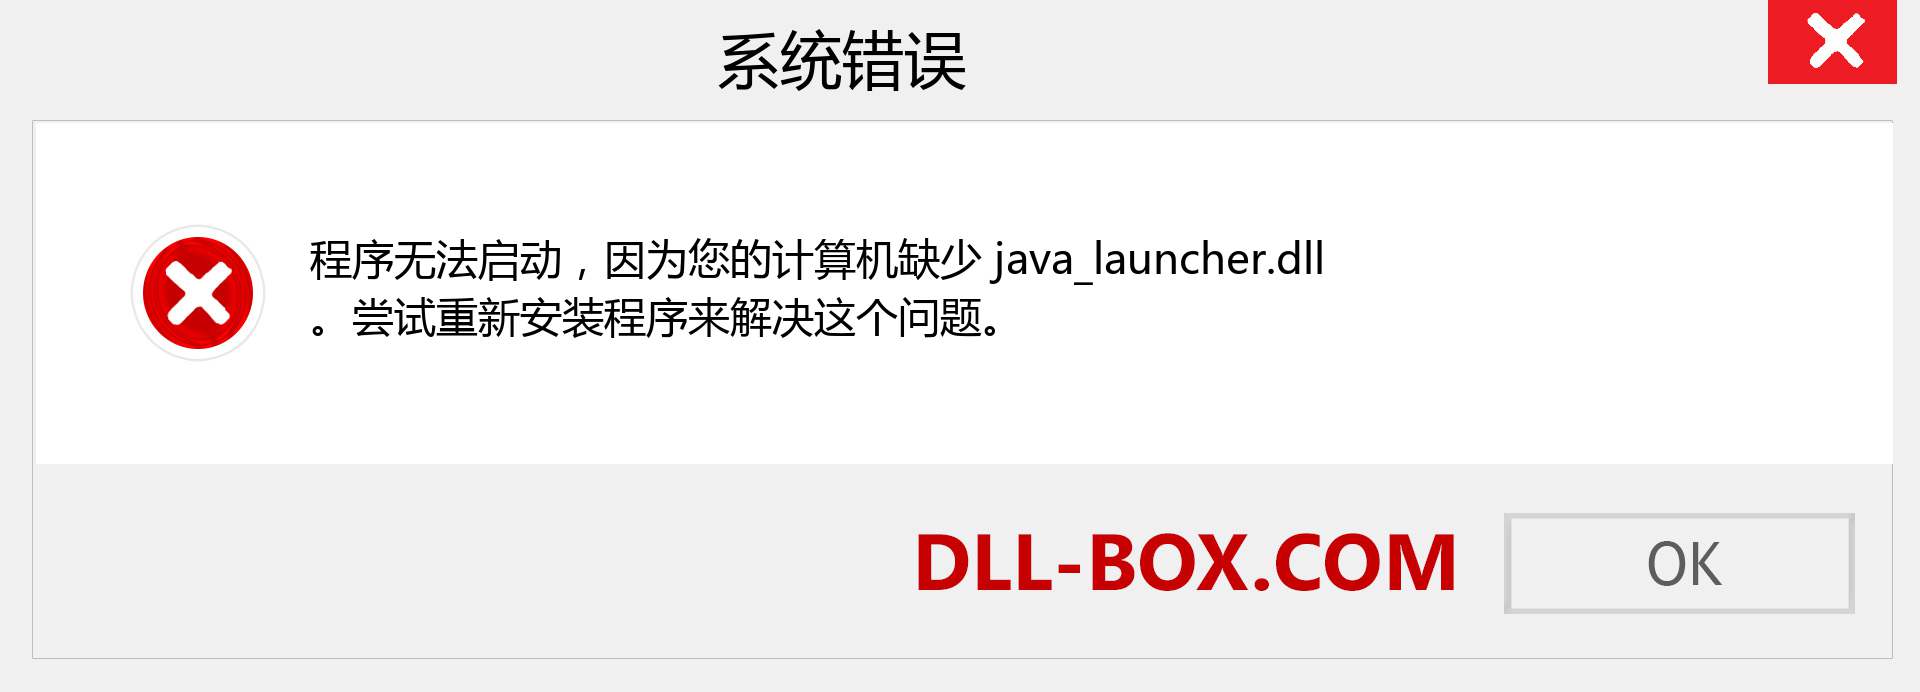 java_launcher.dll 文件丢失？。 适用于 Windows 7、8、10 的下载 - 修复 Windows、照片、图像上的 java_launcher dll 丢失错误